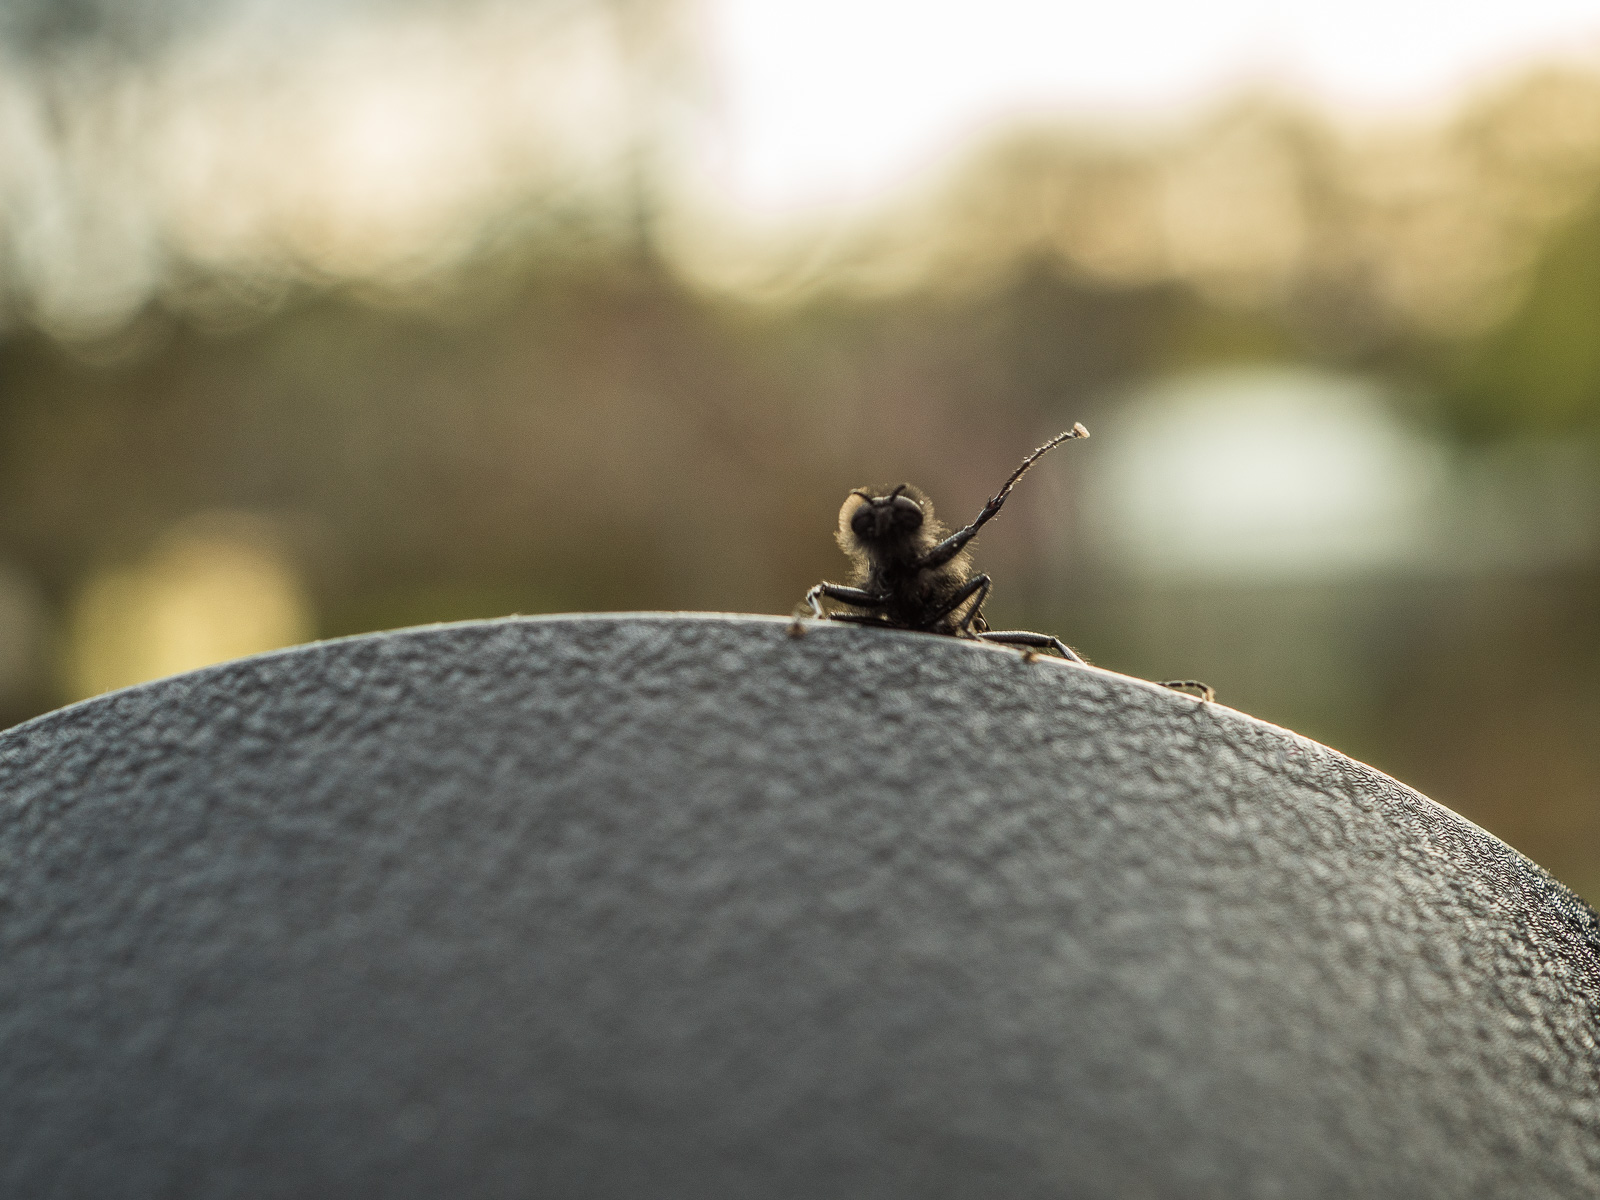 Eine schwarze Fliege oder ähnliches Insekt krabbelt vor dem Hintergrund untergehender Sonne von unten auf einen schwarzen Untergrund. Hier streckt es einen Arm in die Höhe.